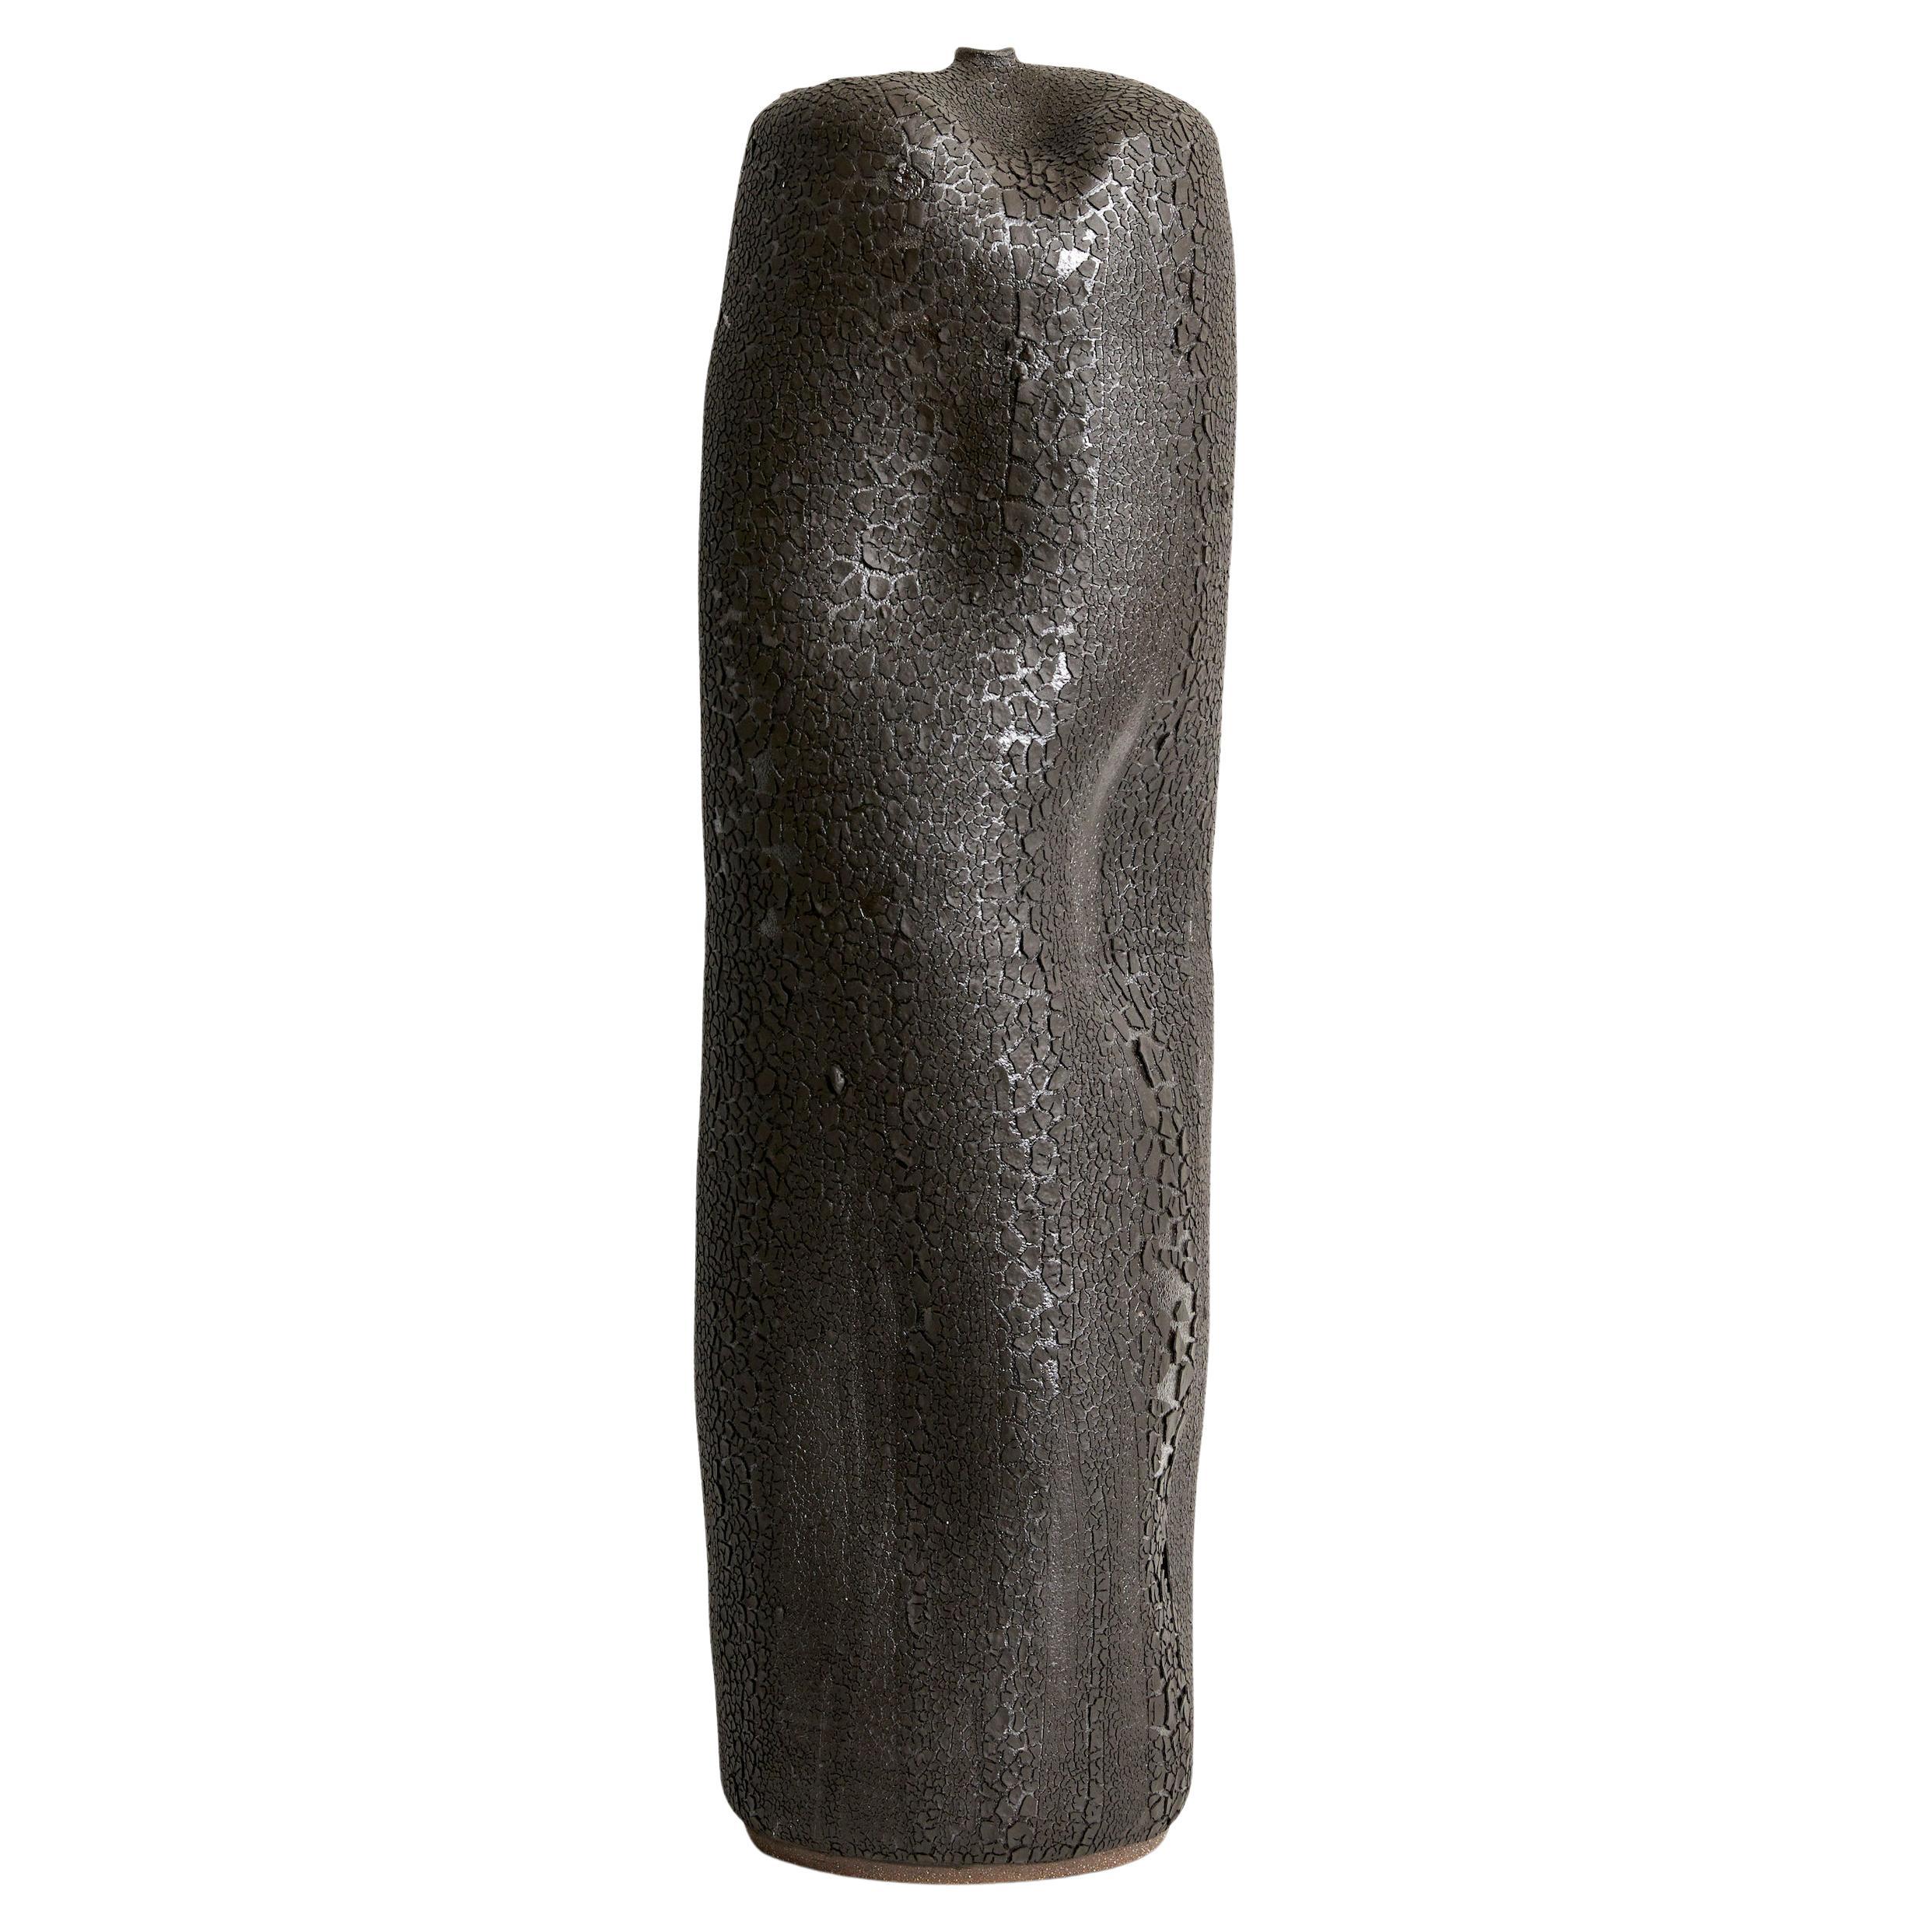 Skoby Joe Tall Black Textured Ceramic Vase Mid-Century Modern Vessel Wabi Sabi